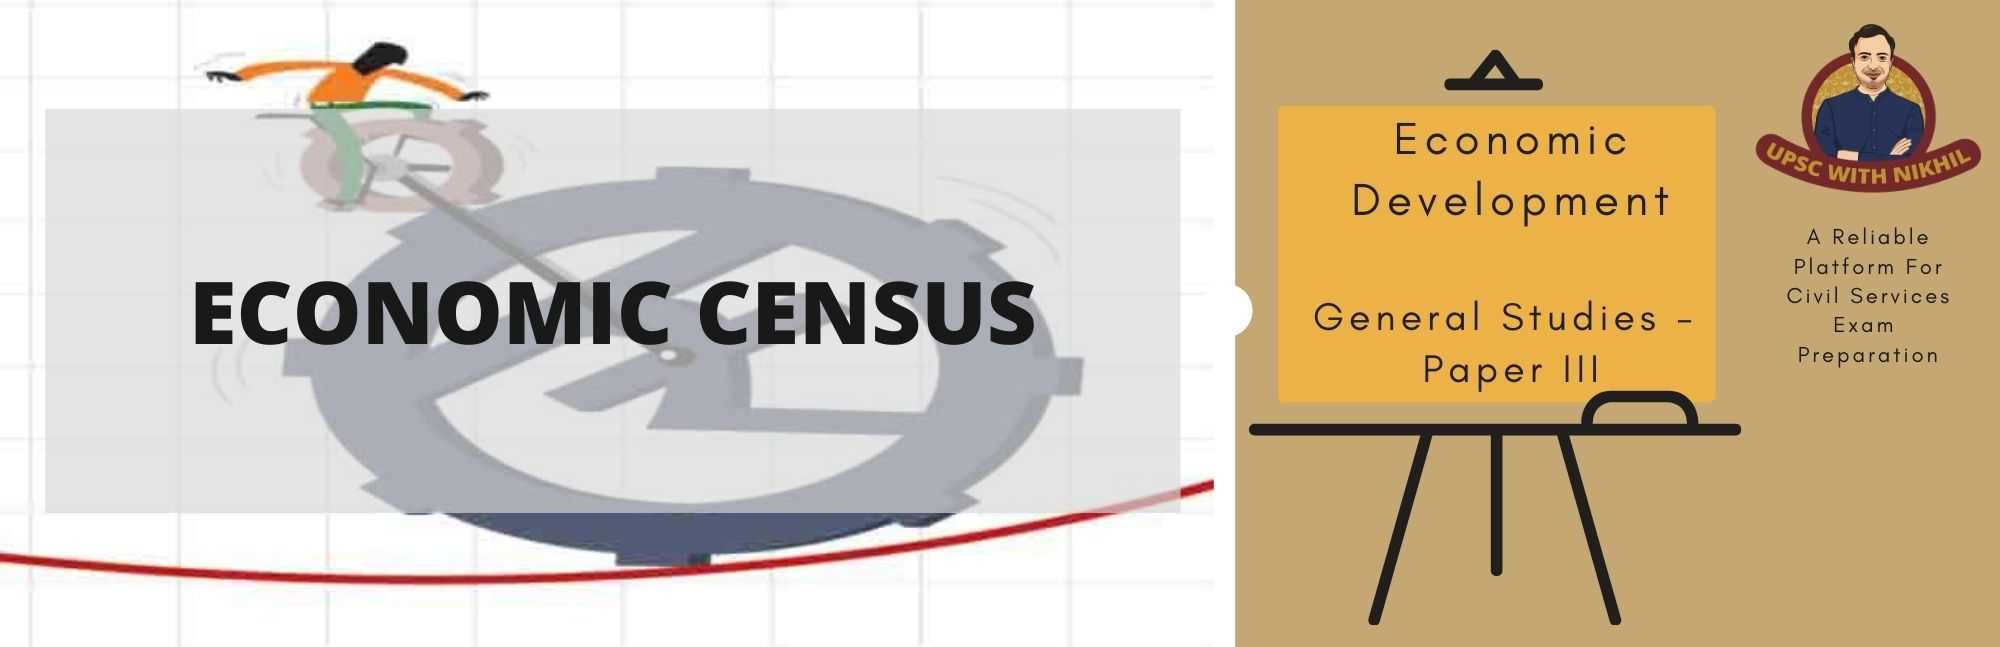 Economic Census